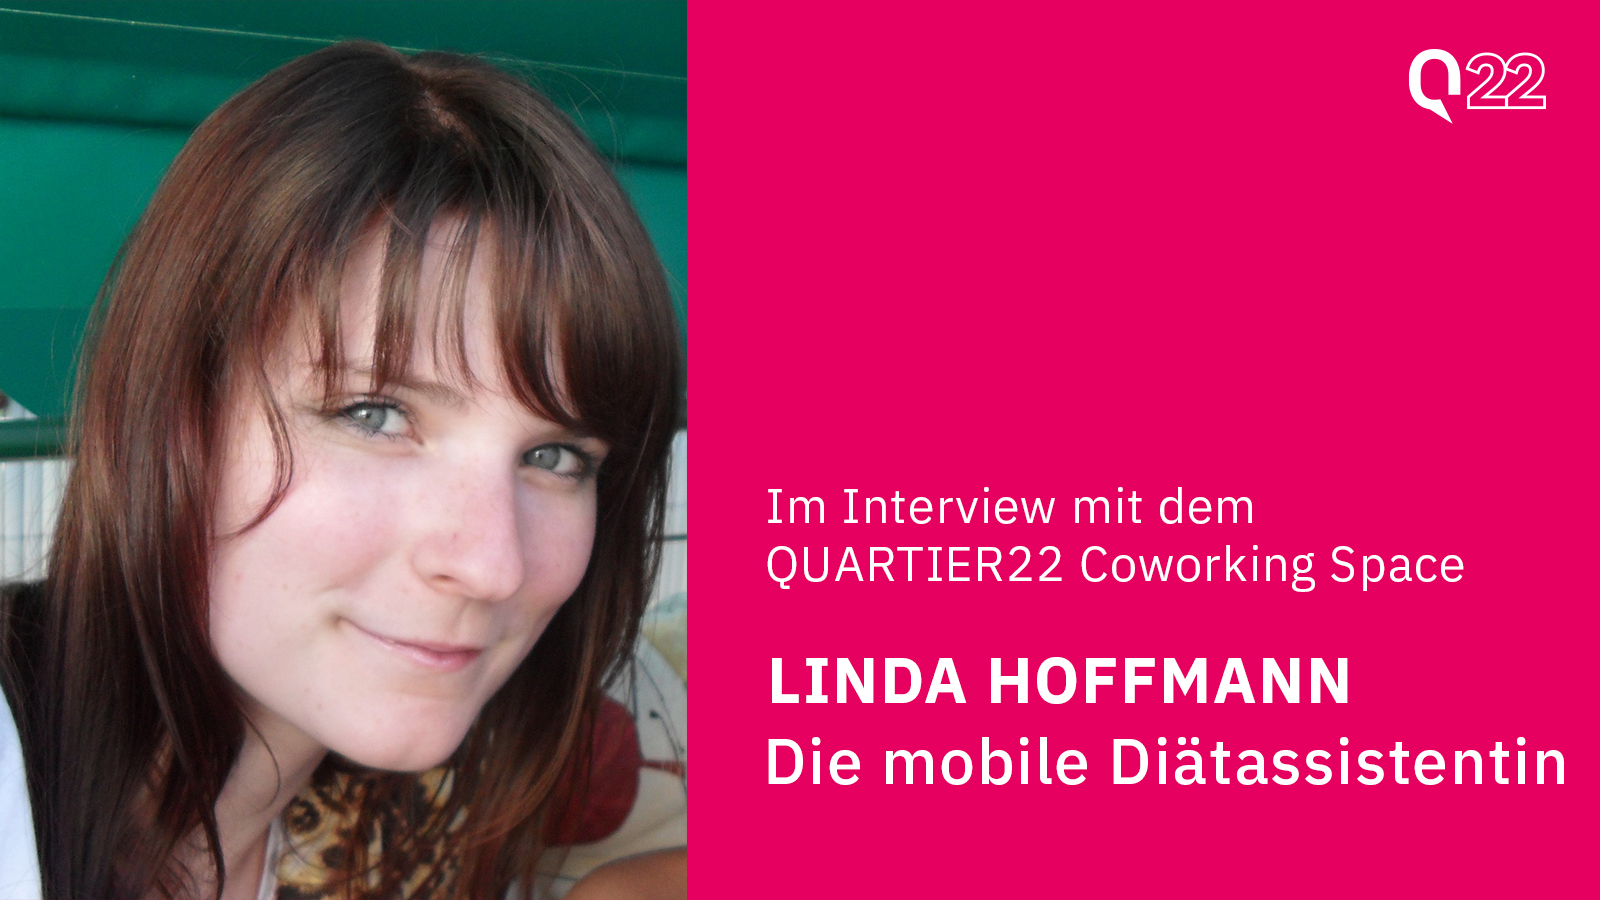 Quartier22 Coworking Space im Interview mit Linda Hoffmann - Die mobile Diätassistentin